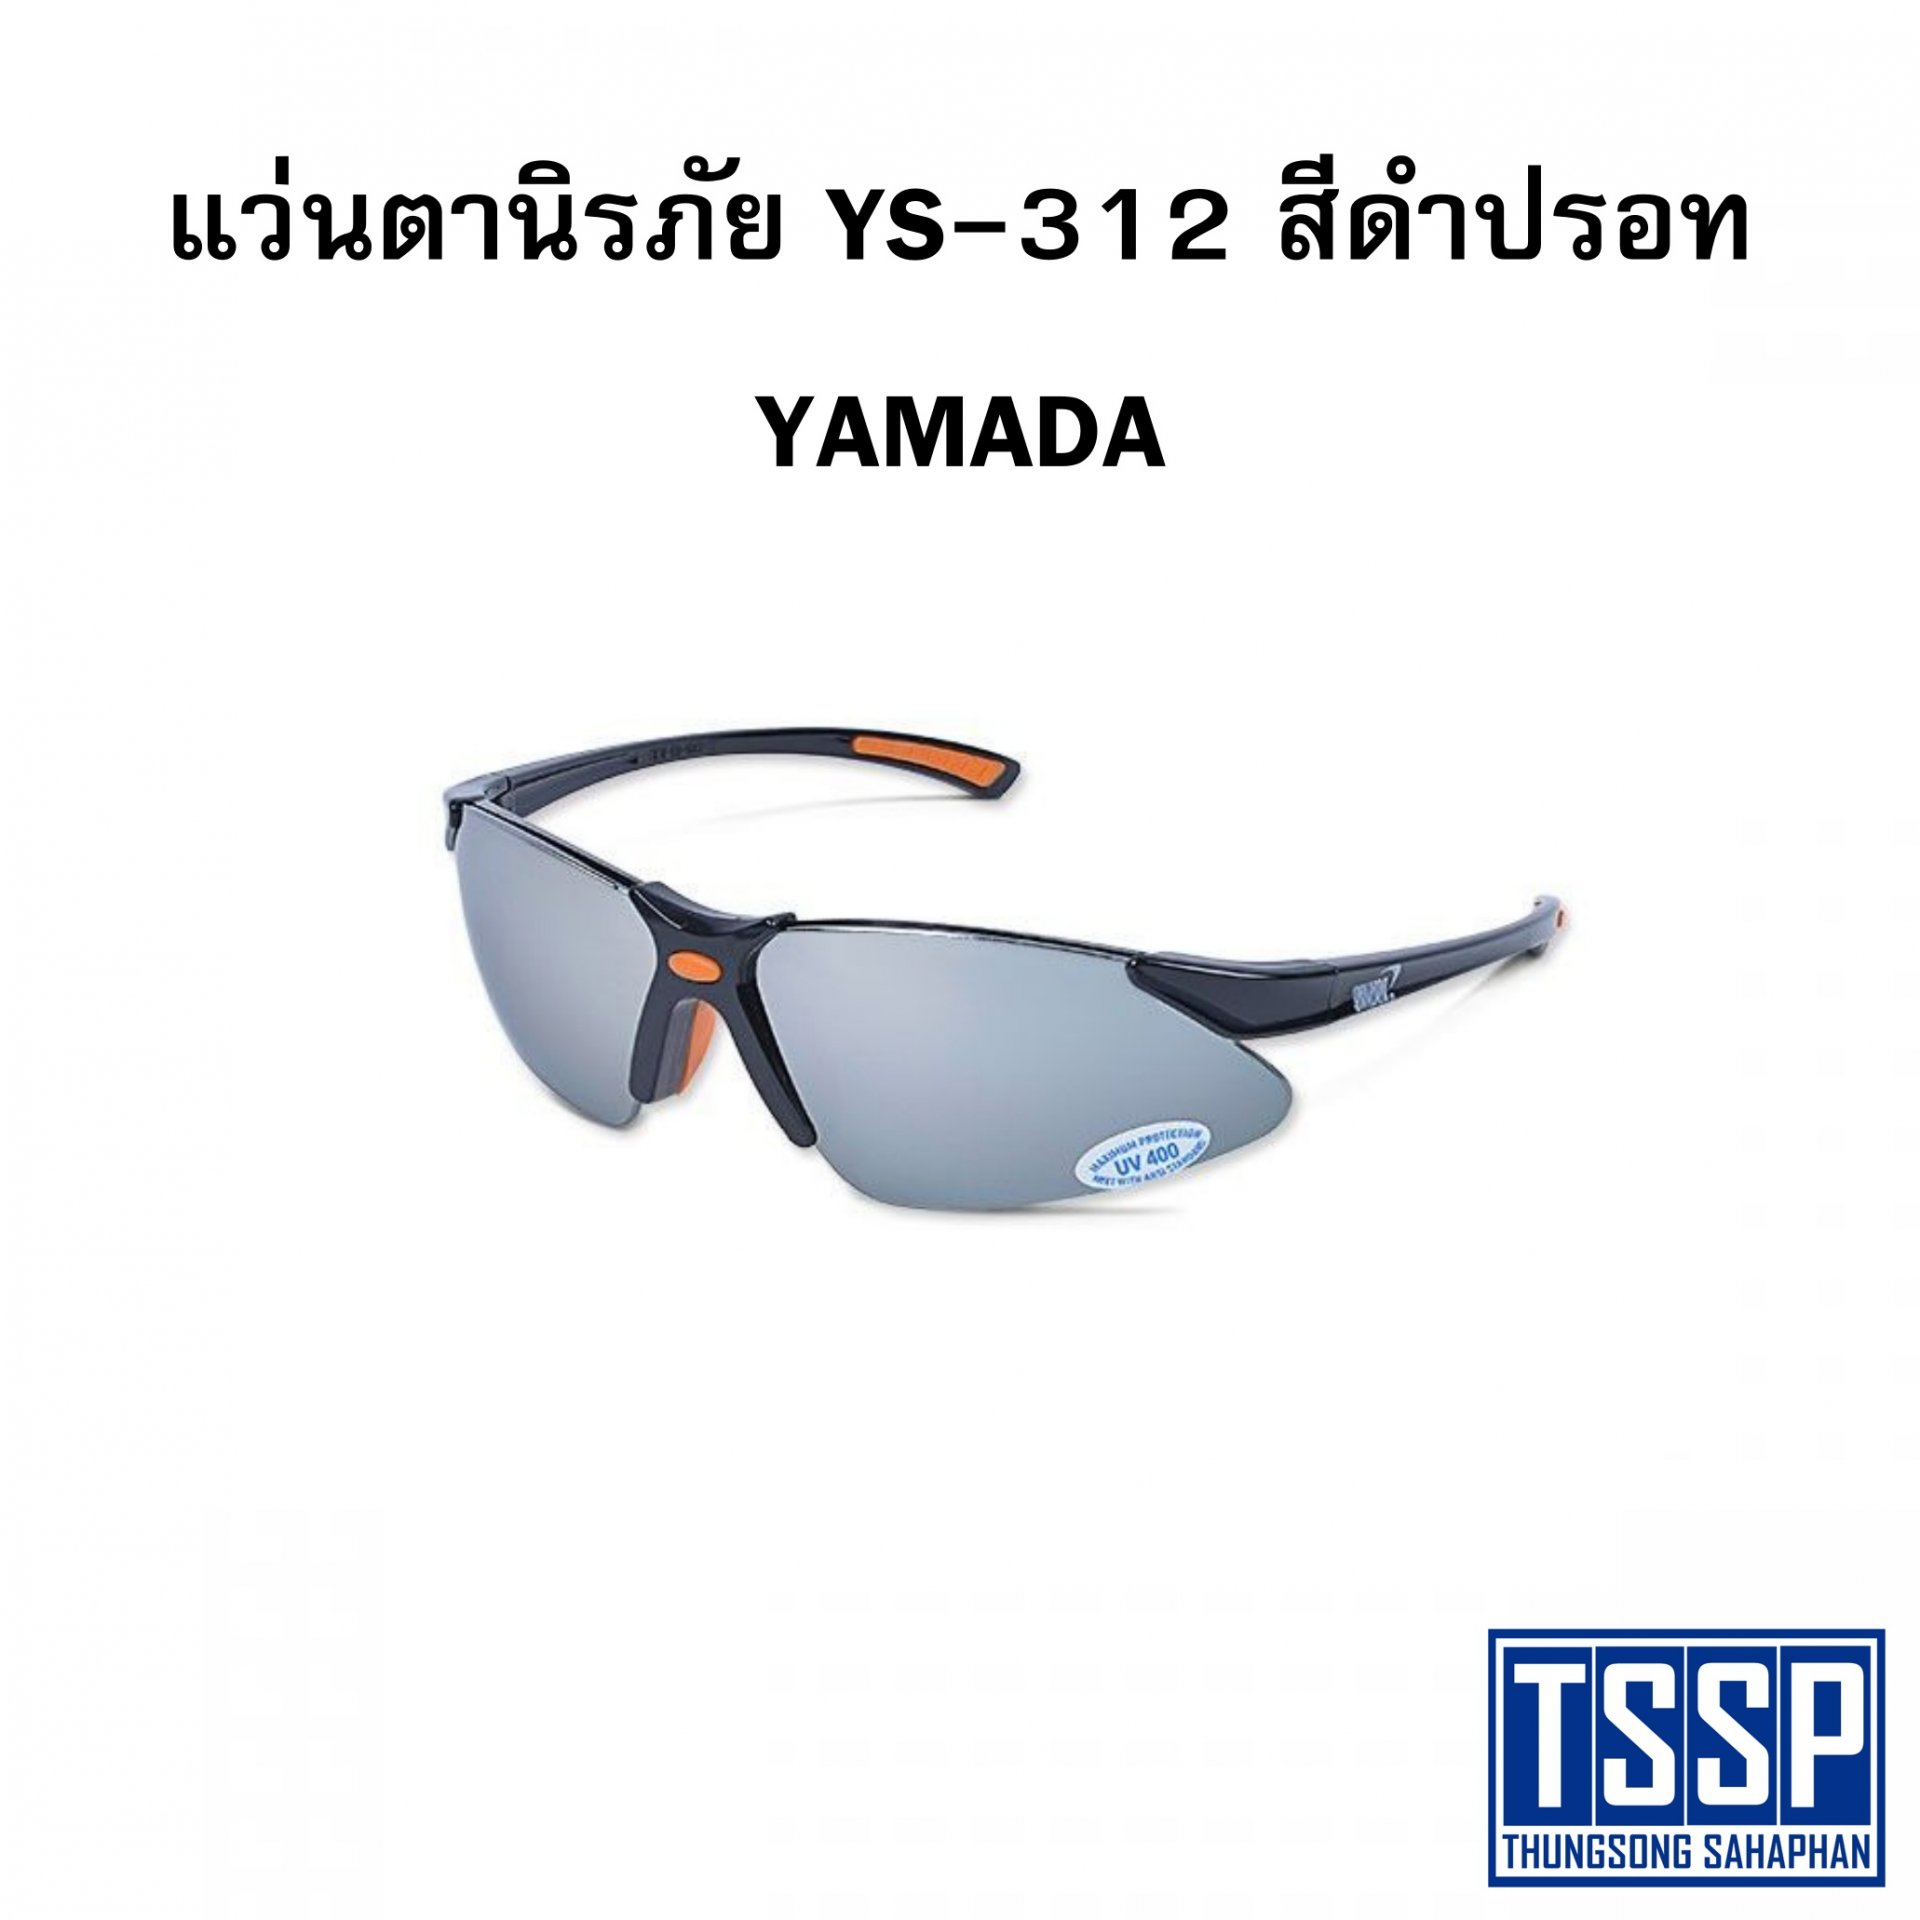 แว่นตานิรภัย YS-312 สีดำปรอท YAMADA